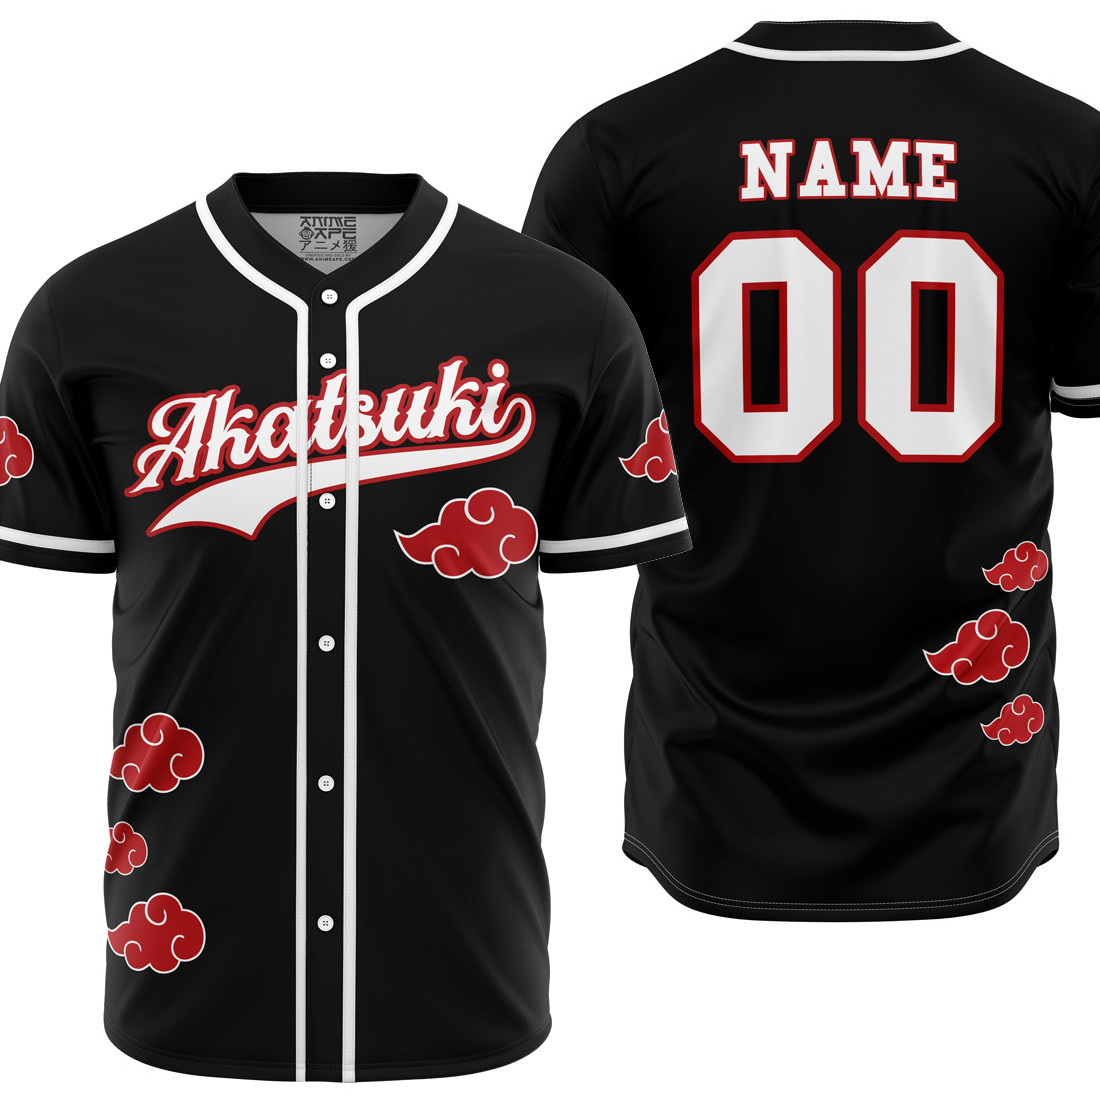 Personalized Akatsuki Naruto Baseball Jersey, Unisex Jersey Shirt for Men Women